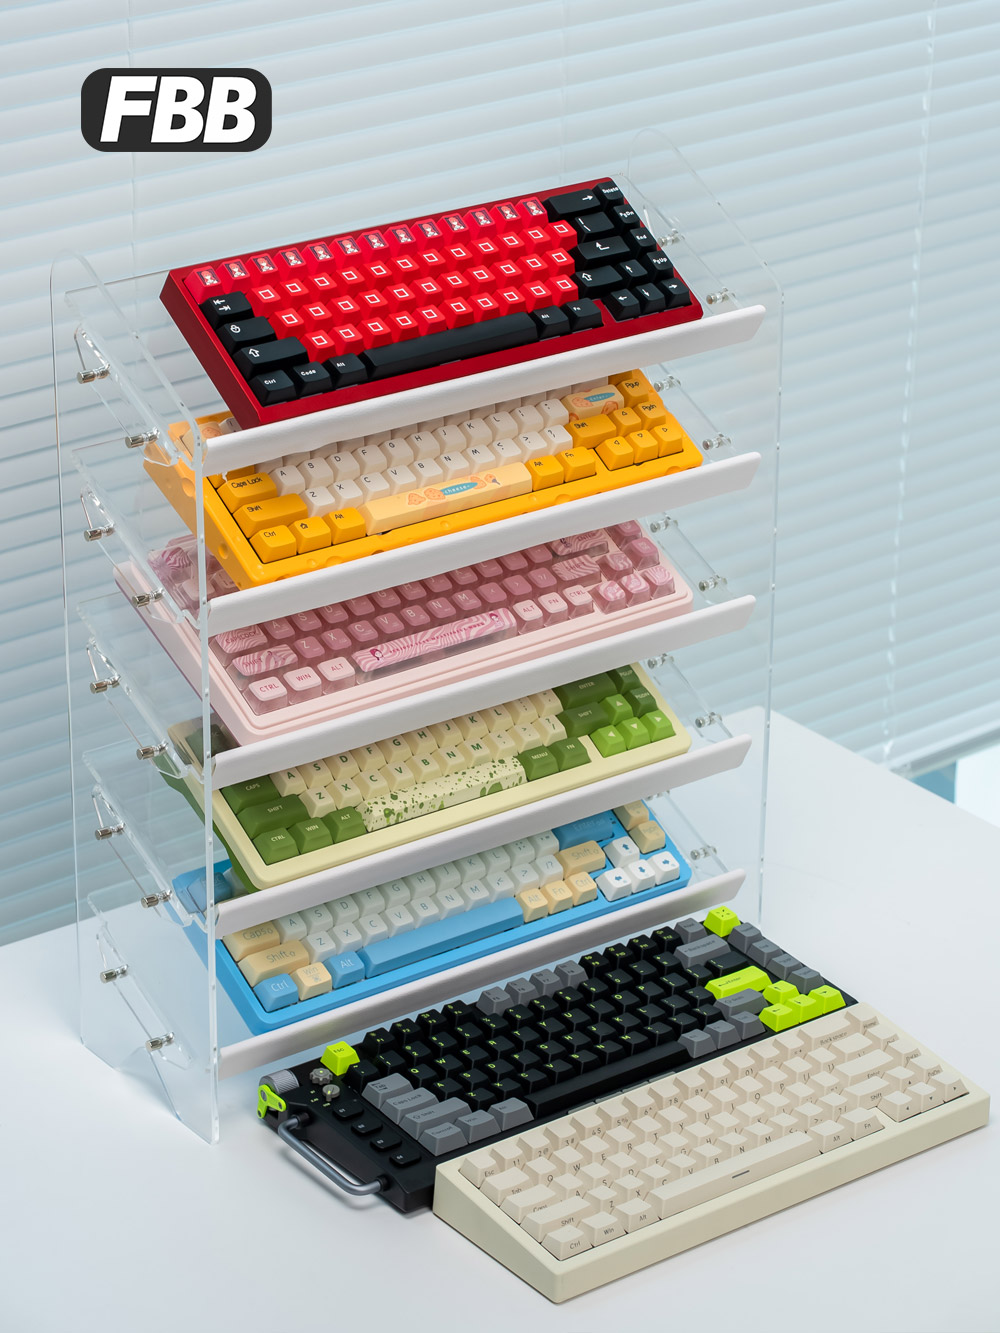 多層斜臺機械鍵盤展示架壓克力材質可放40釐米長鍵盤適合收藏展示